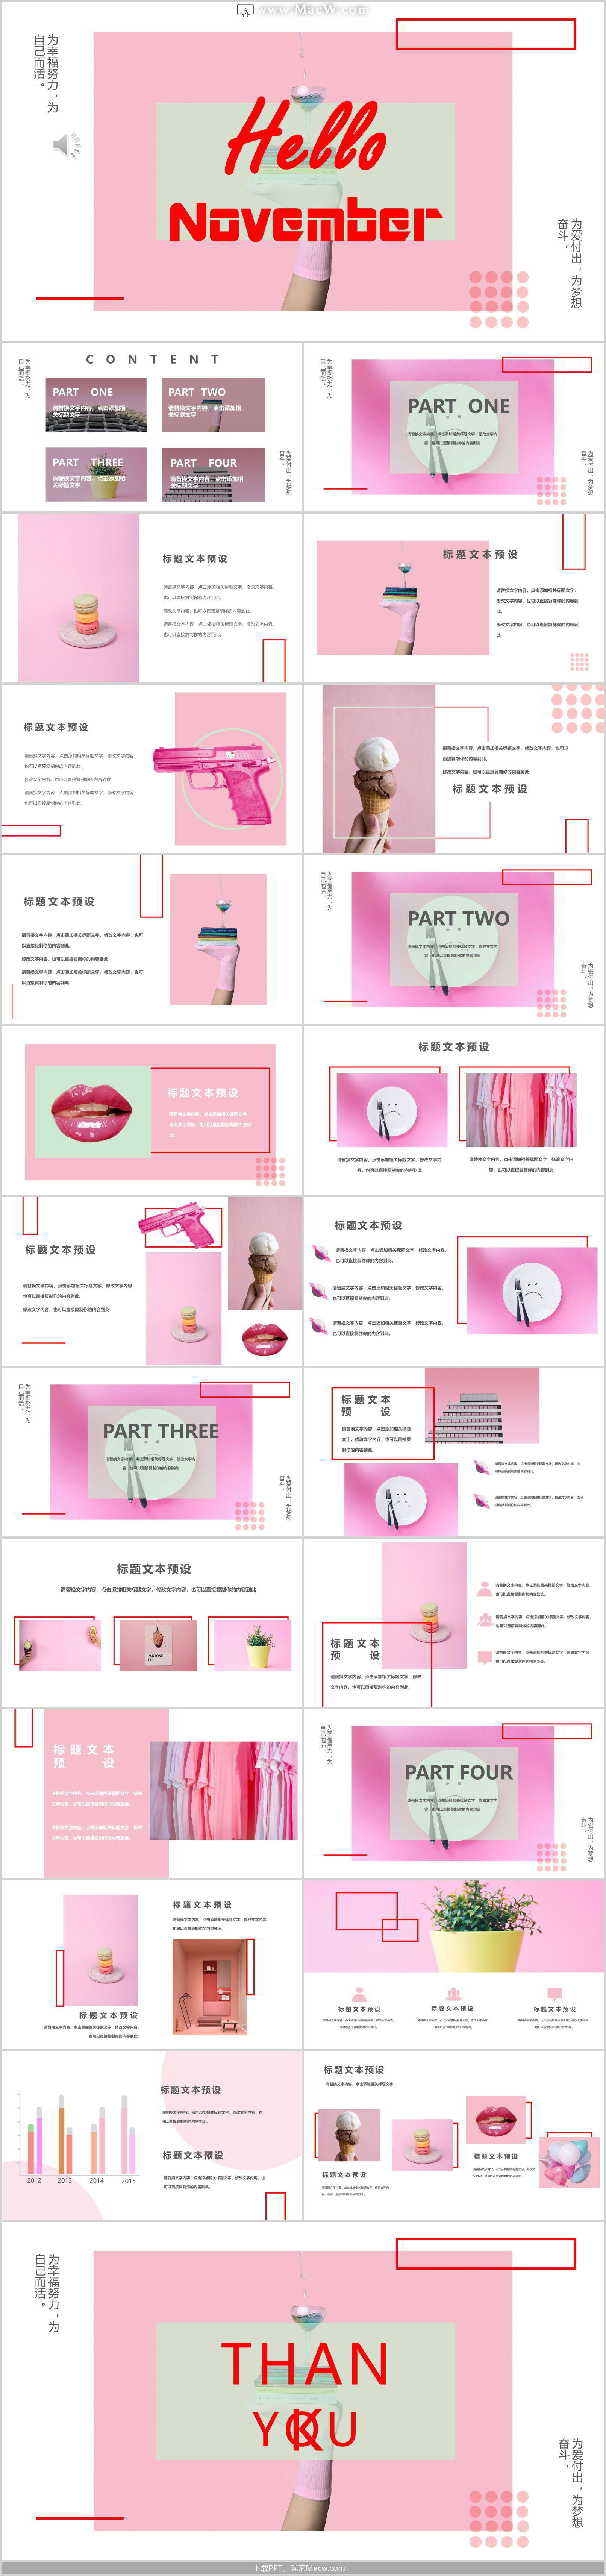 粉色时尚杂志画册样式英文PPT模板